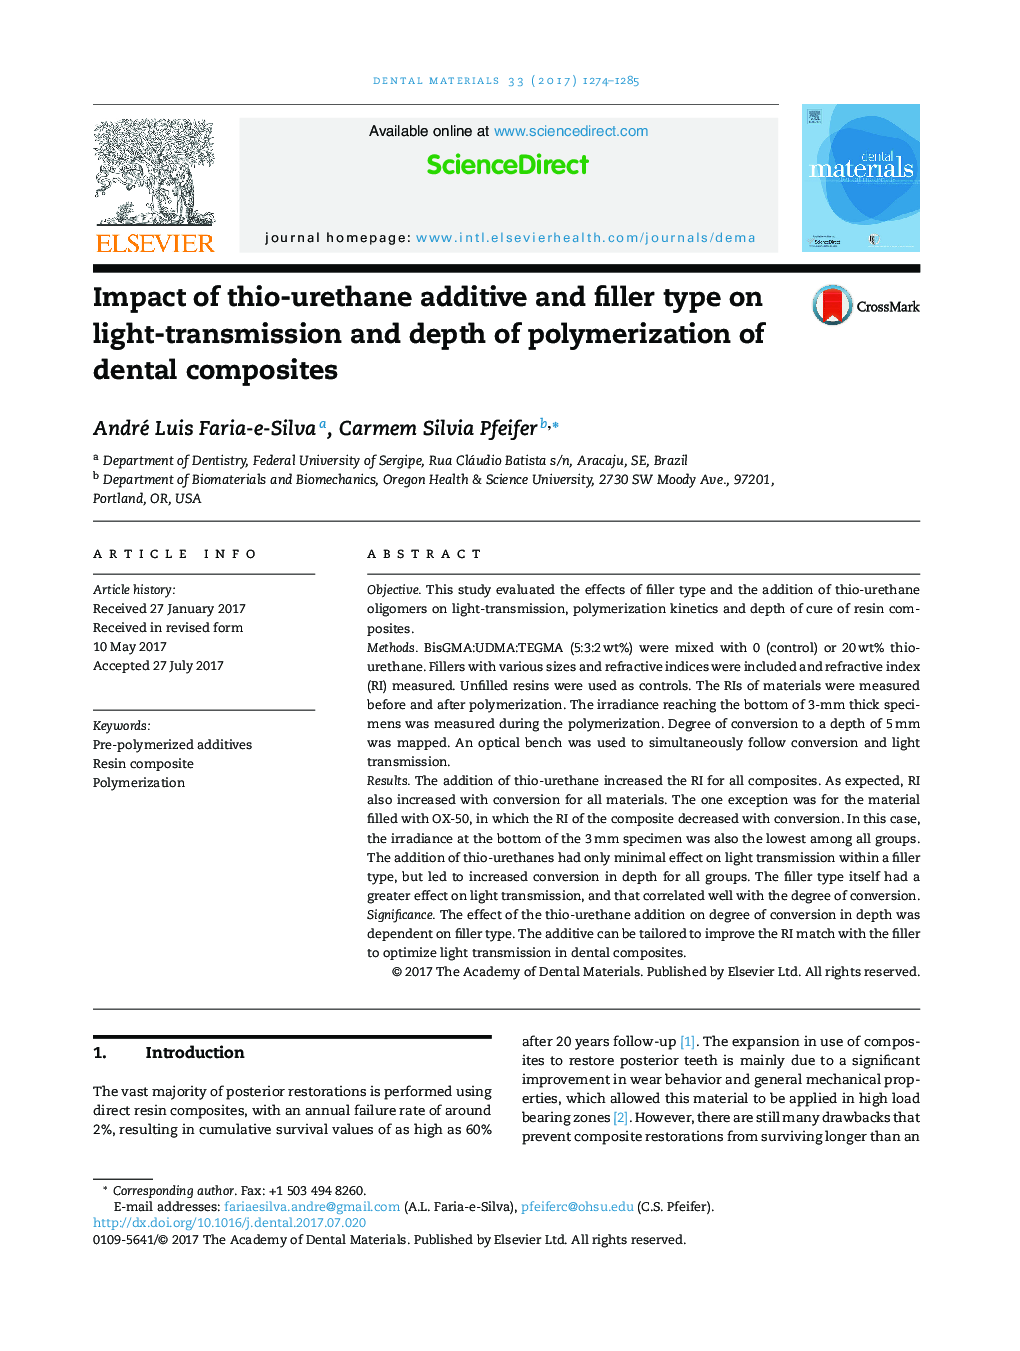 تأثیر نوع افزودنی تری اوریتان و نوع پرکننده بر انتقال نور و عمق پلیمریزاسیون کامپوزیت های دندانی 